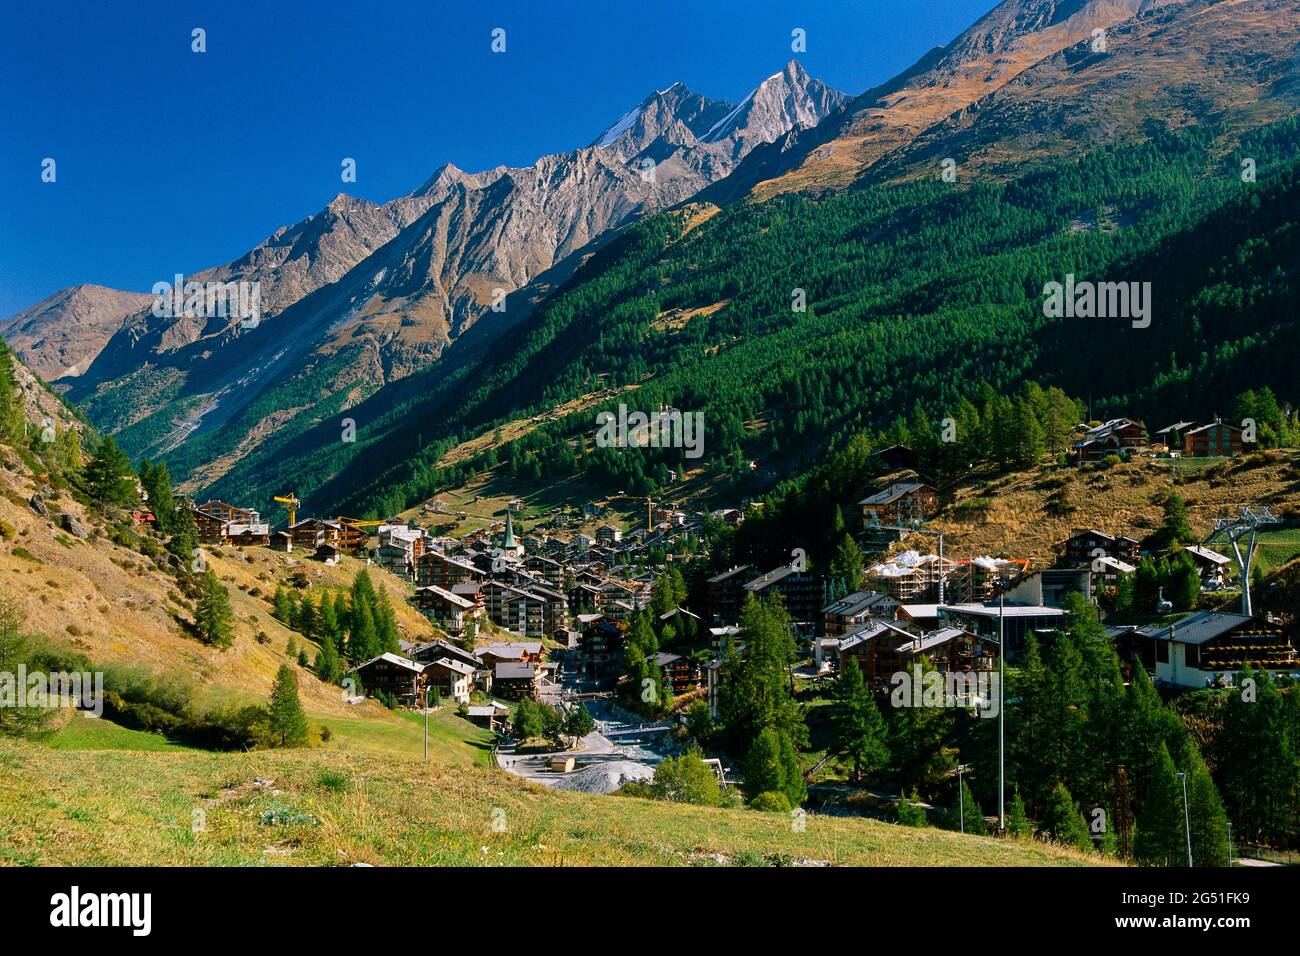 Vue sur la ville dans la vallée, Zermatt, Suisse Banque D'Images